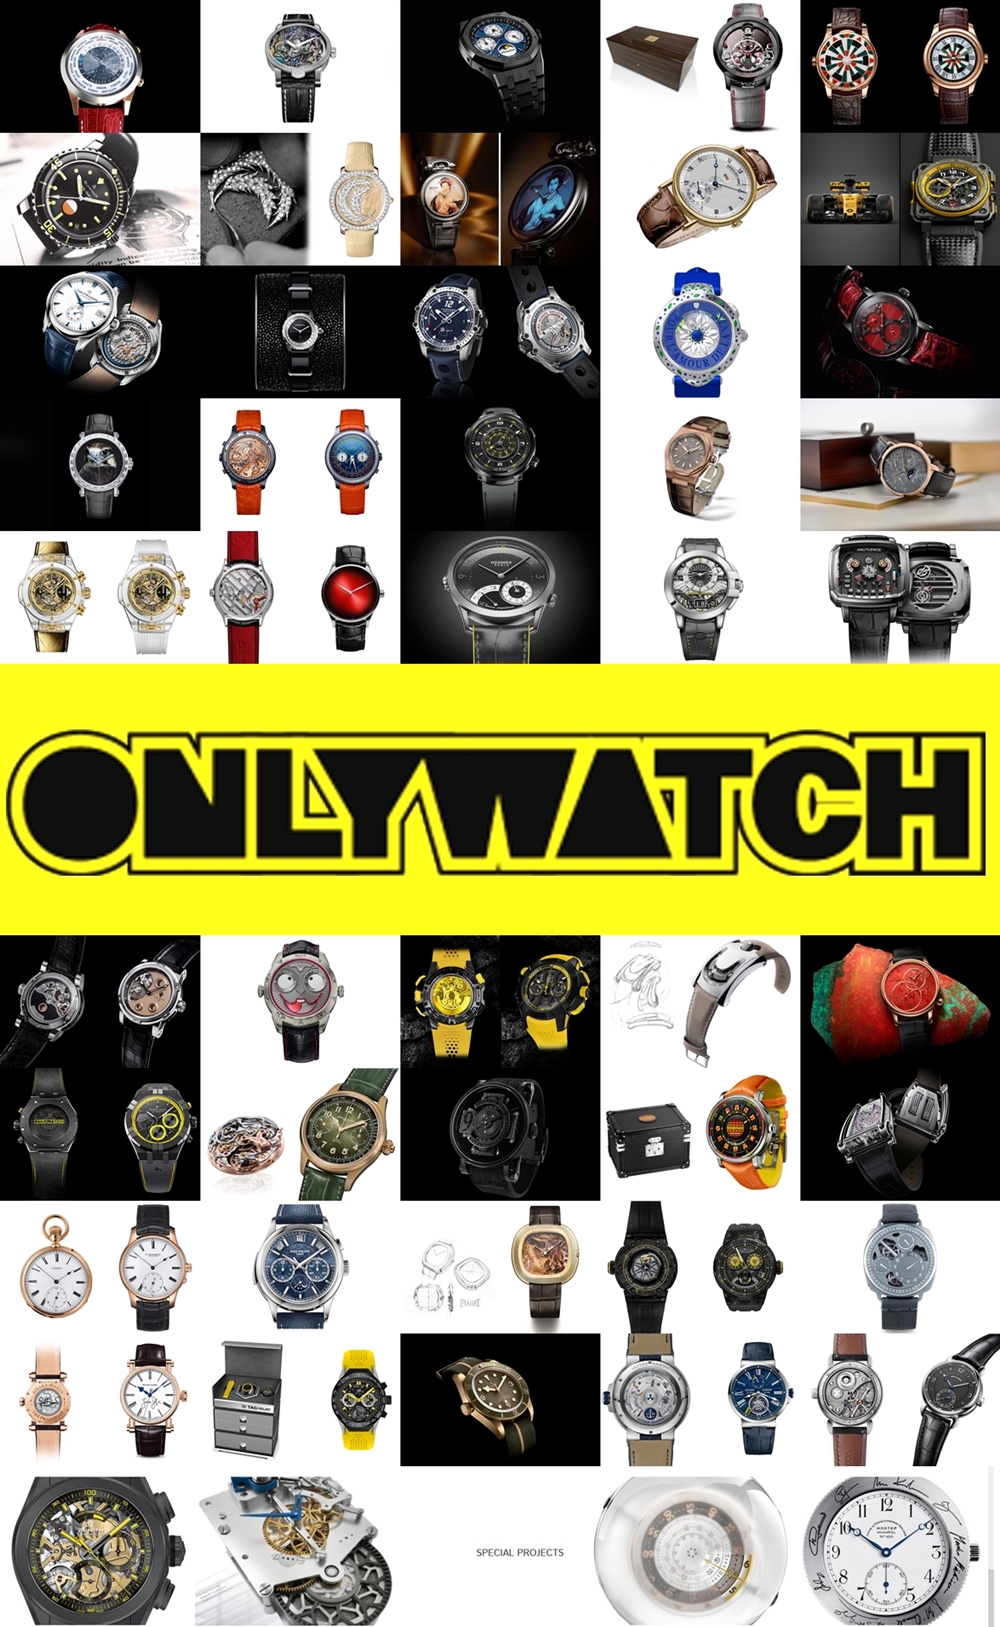 ONLY WATCH 2017 – rekordowa ilość 50 uczestników. Prezentujemy pełne zestawienie unikatowych zegarków tegorocznej aukcji!